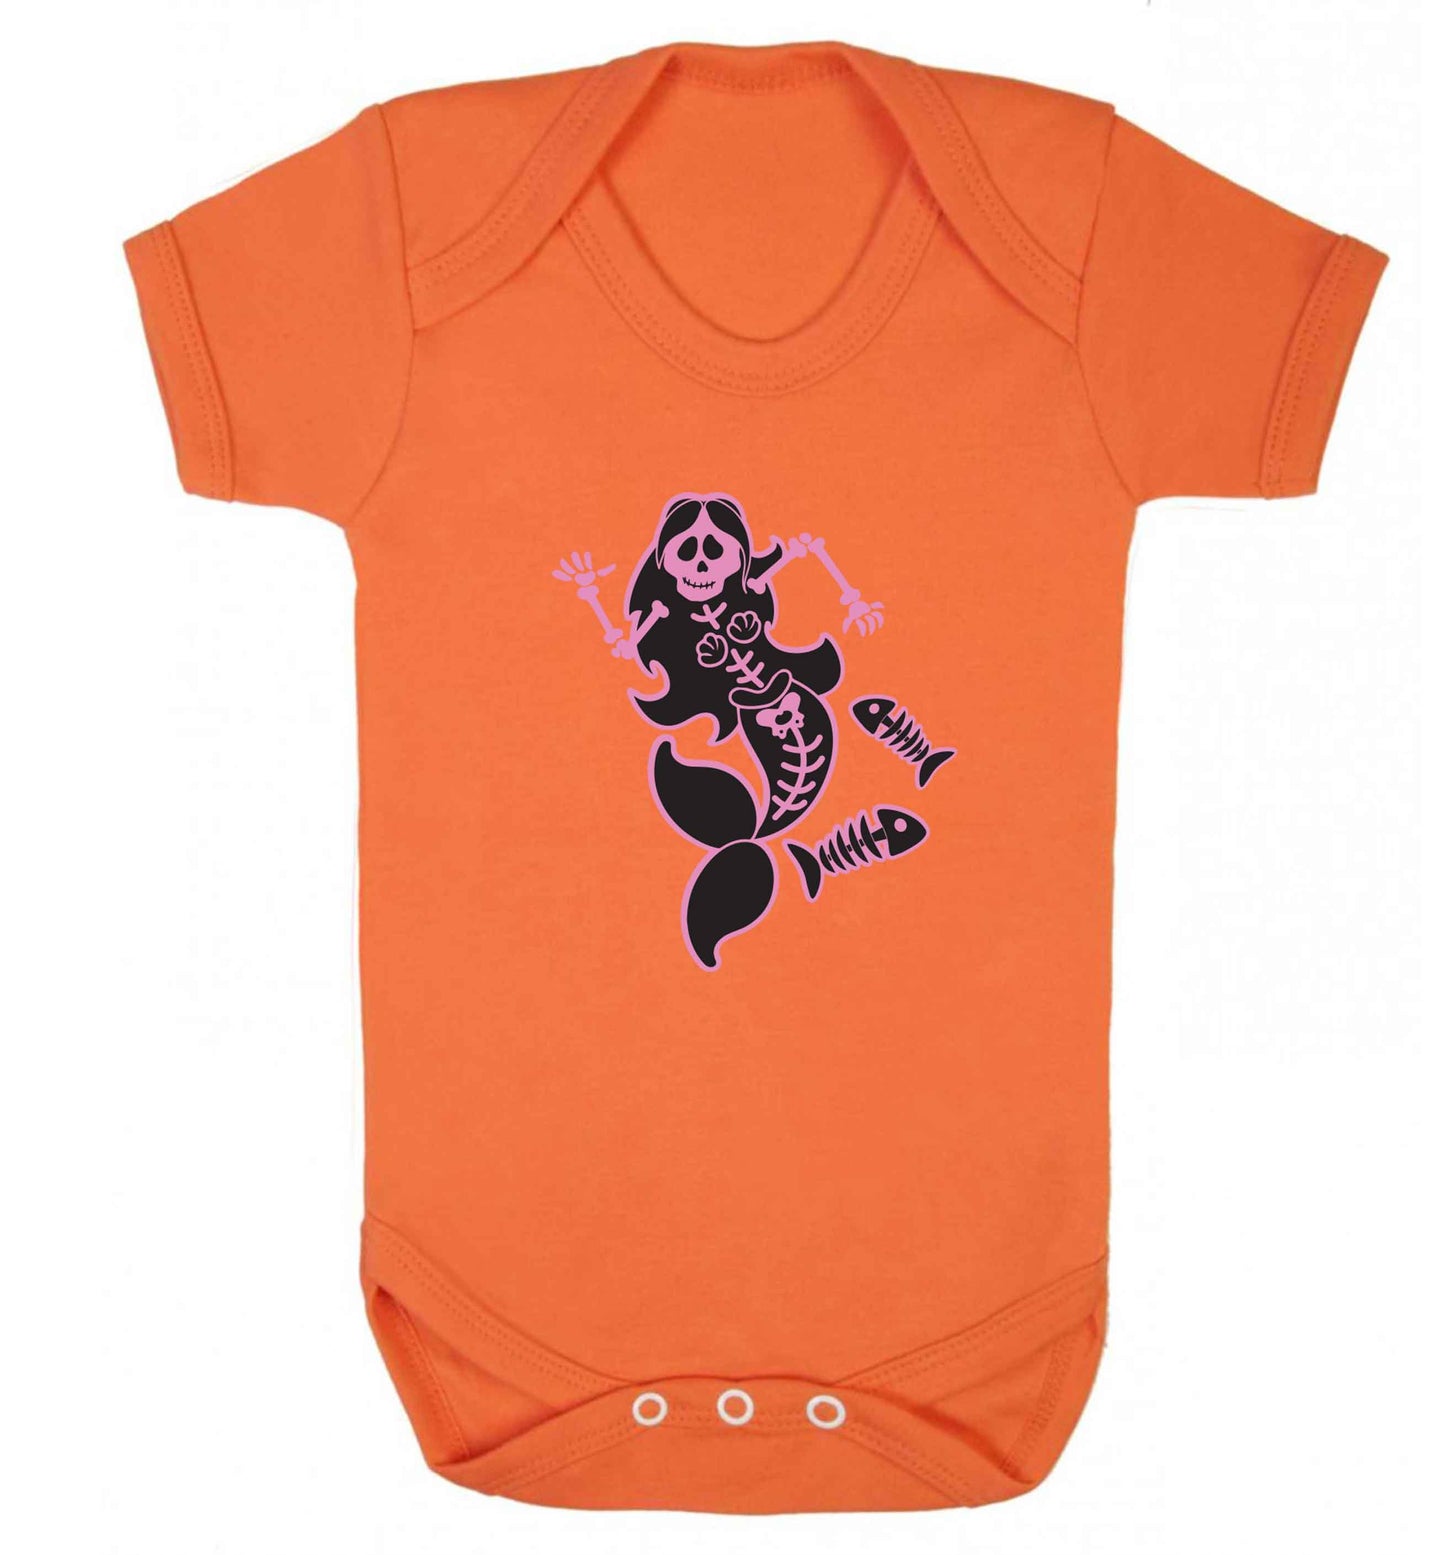 Skeleton mermaid baby vest orange 18-24 months